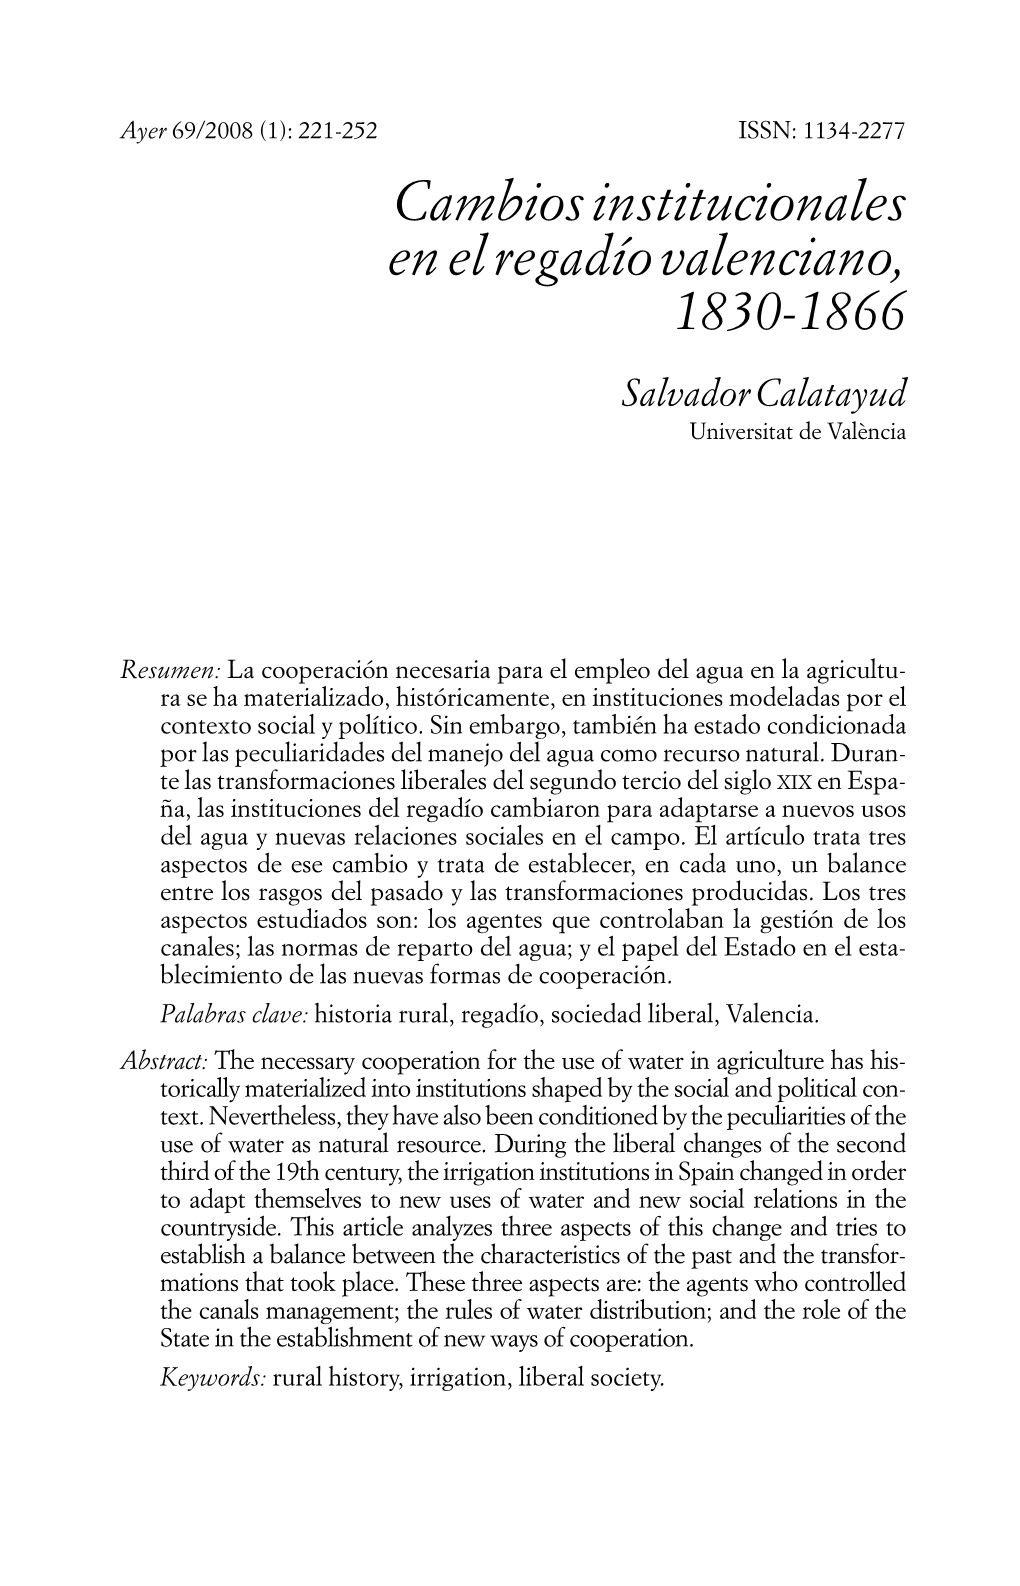 Cambios Institucionales En El Regadío Valenciano, 1830-1866 Salvador Calatayud Universitat De València